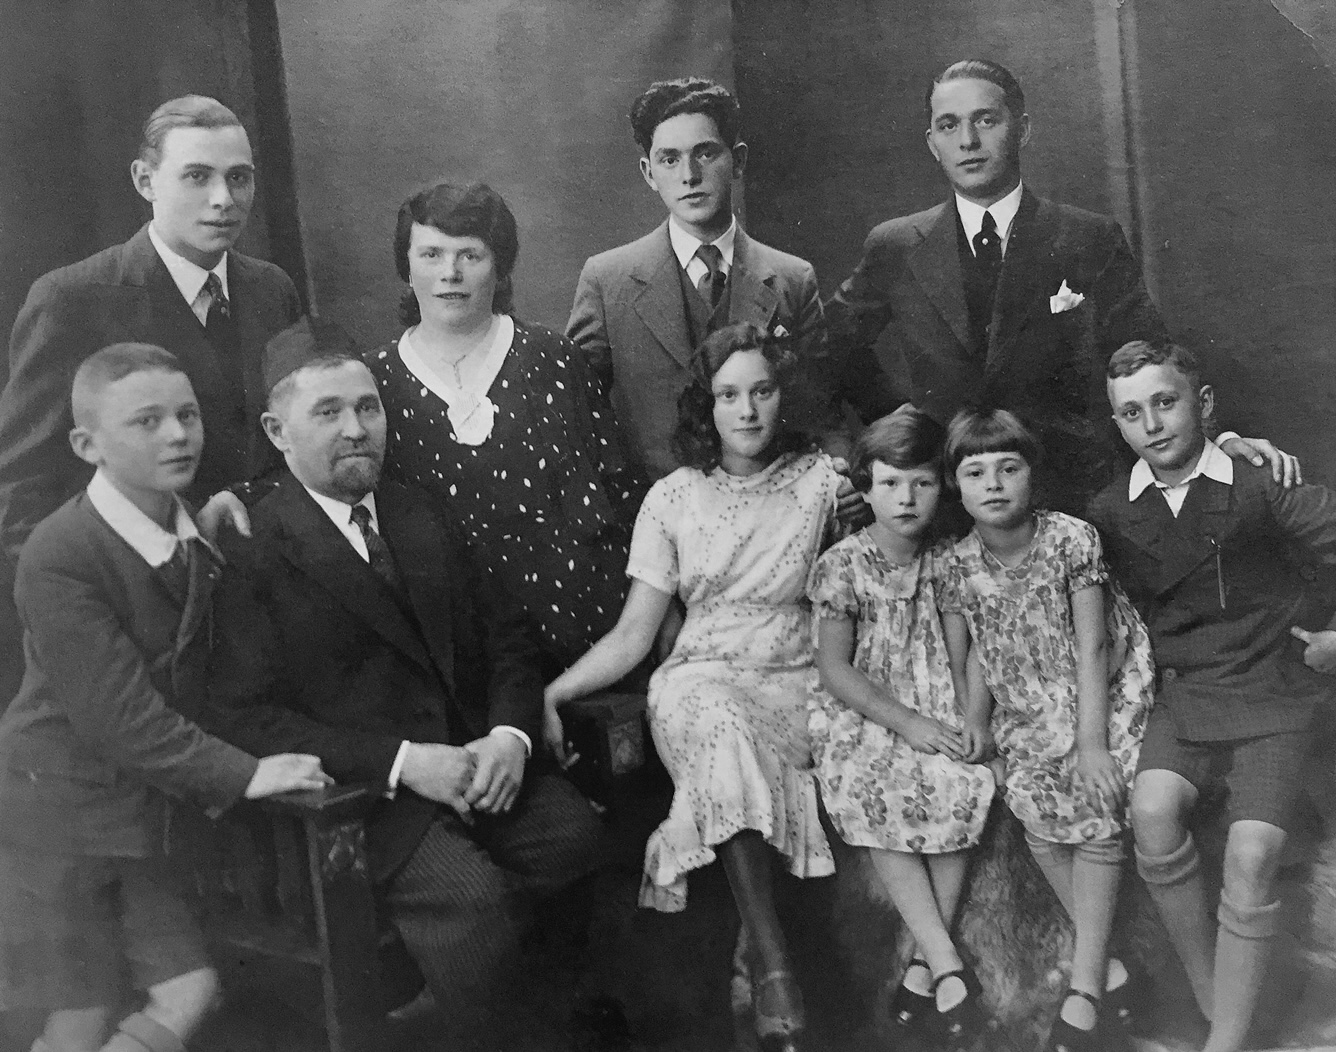 Familie Weissmann, obere Reihe von links: Morris, Sheindel, Willi, Simon,
untere Reihe von links: Max, Norbert “Nehemia“, Lilli, Elli, Ani und Oscar.